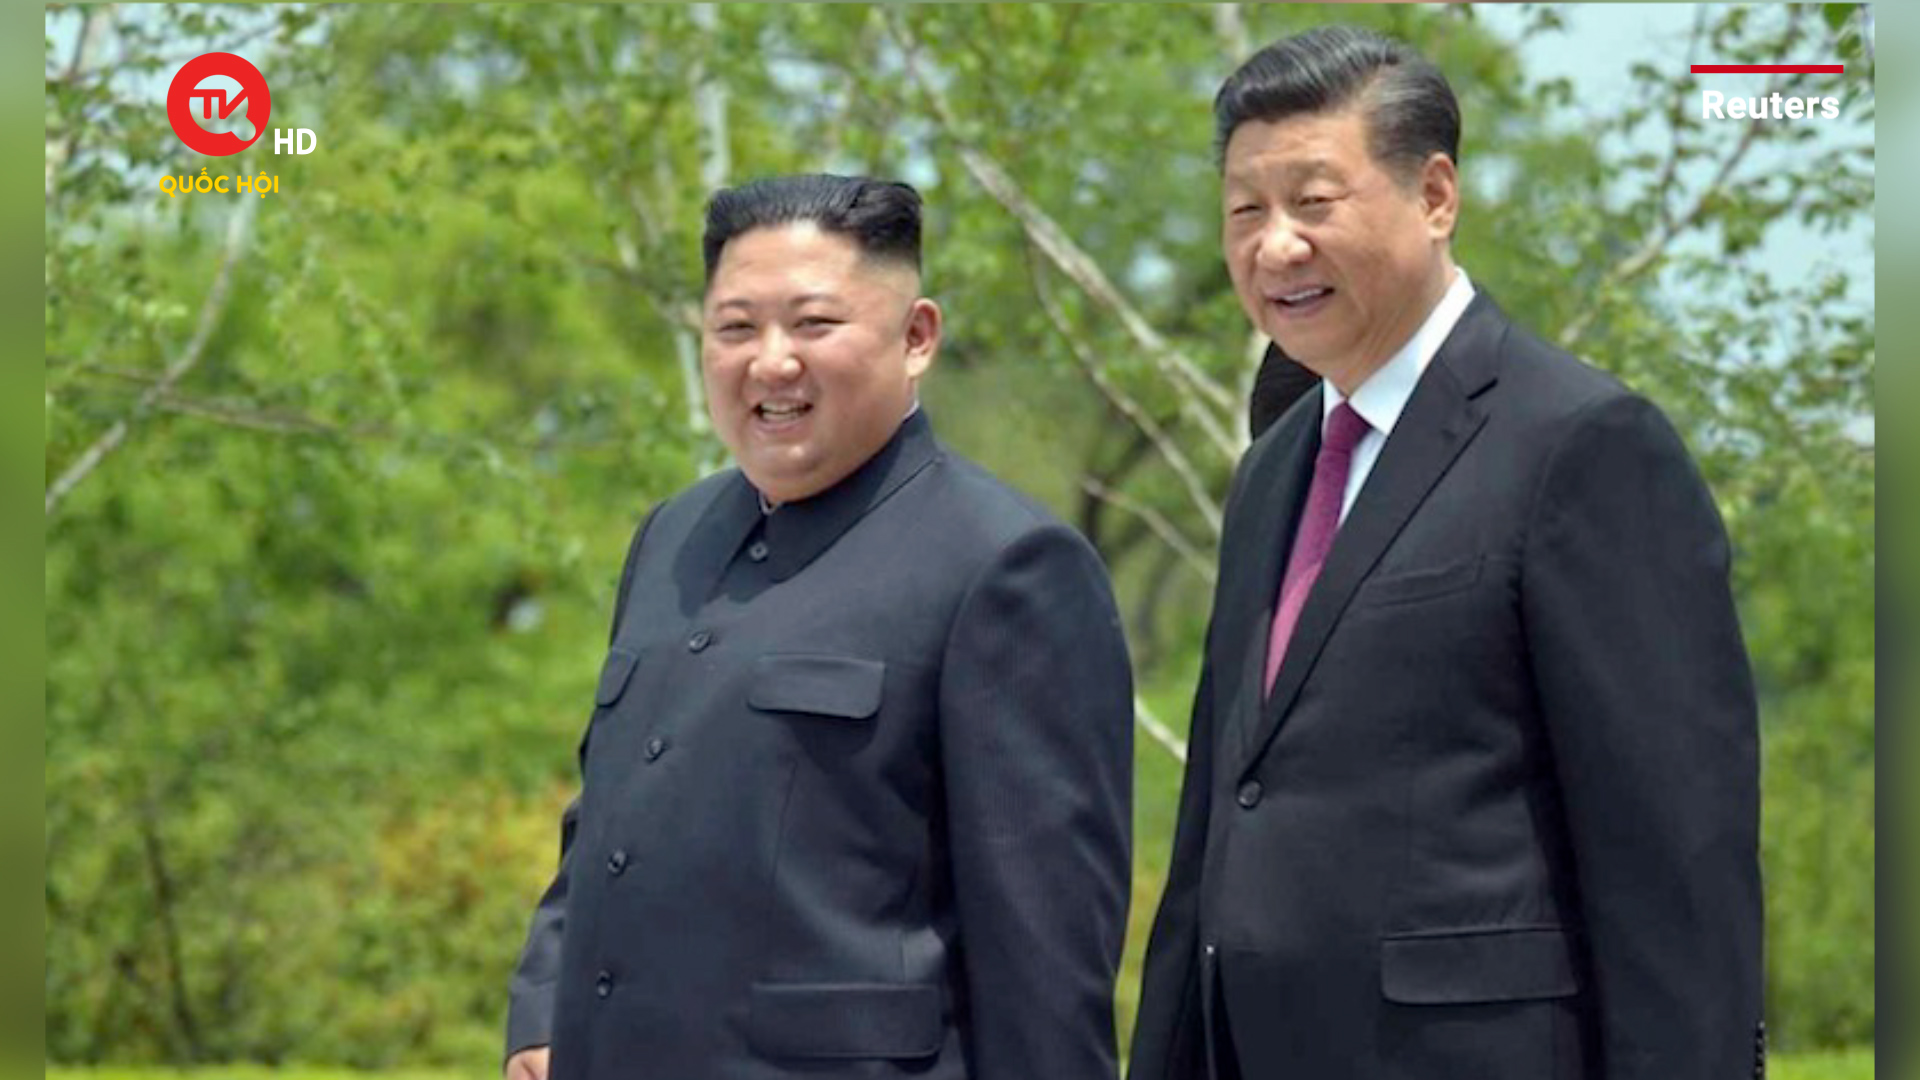 Triều Tiên cam kết thúc đẩy hợp tác lâu dài với Trung Quốc